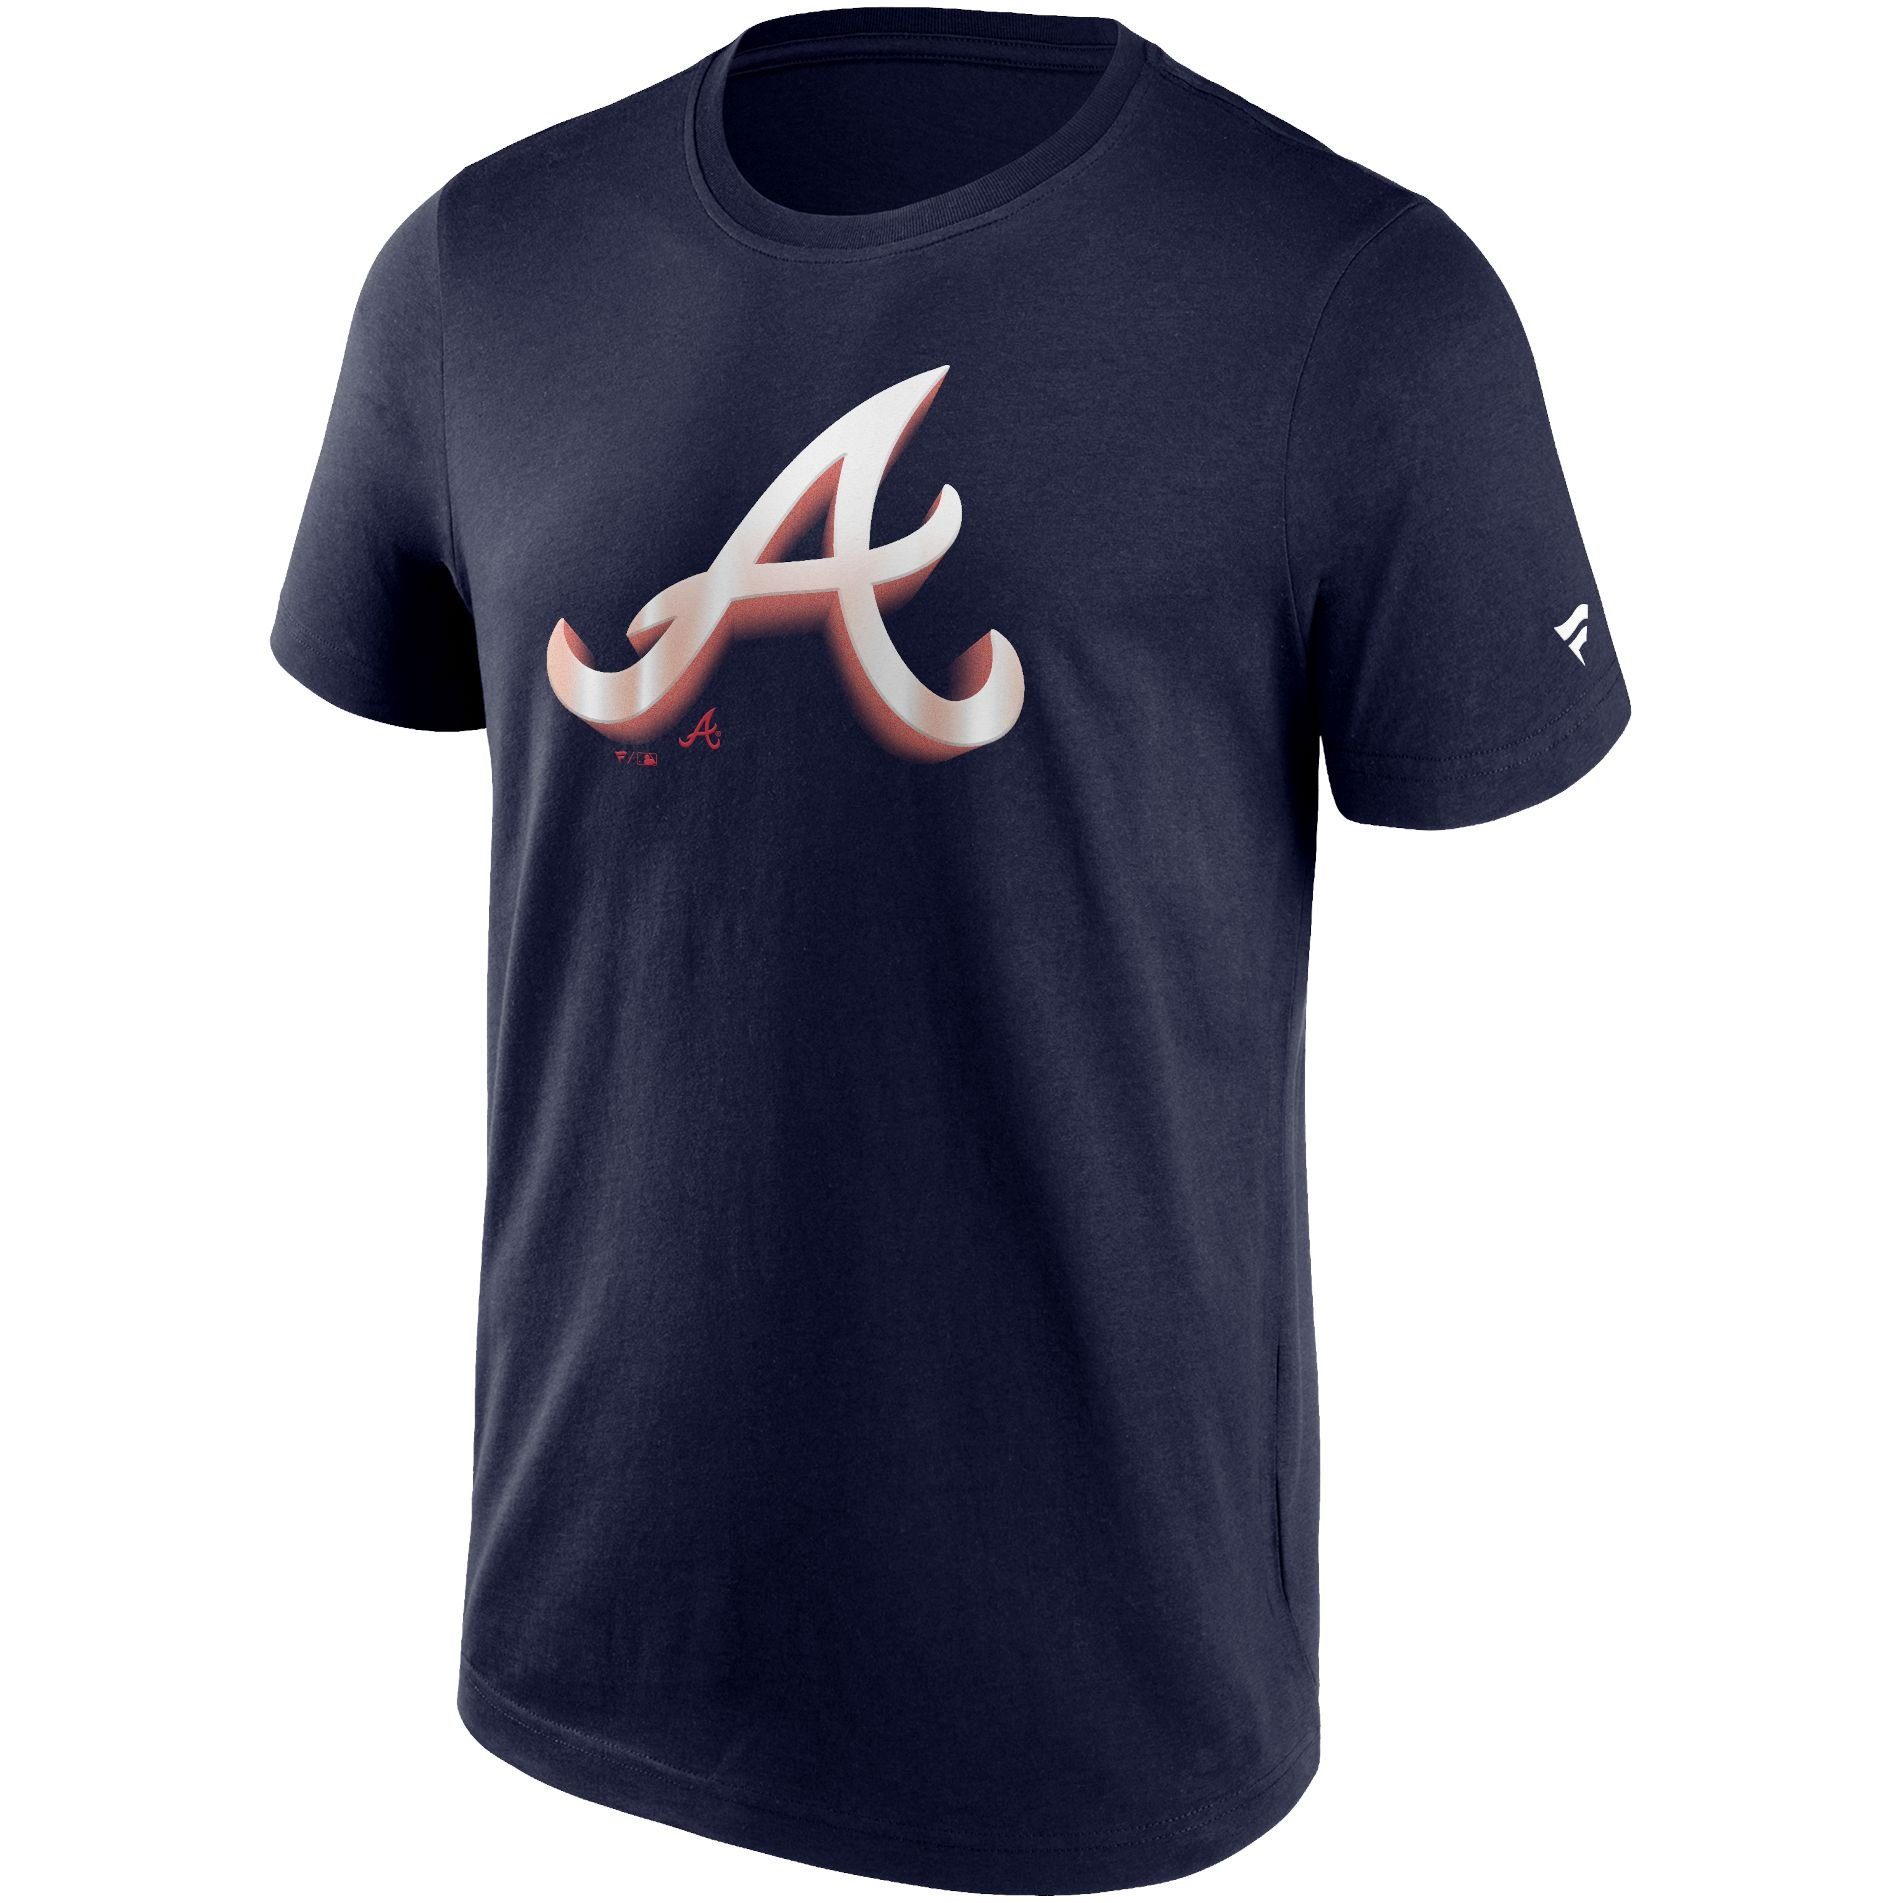 Fanatics Print-Shirt CHROME LOGO MLB NHL NFL Teams Atlanta Braves